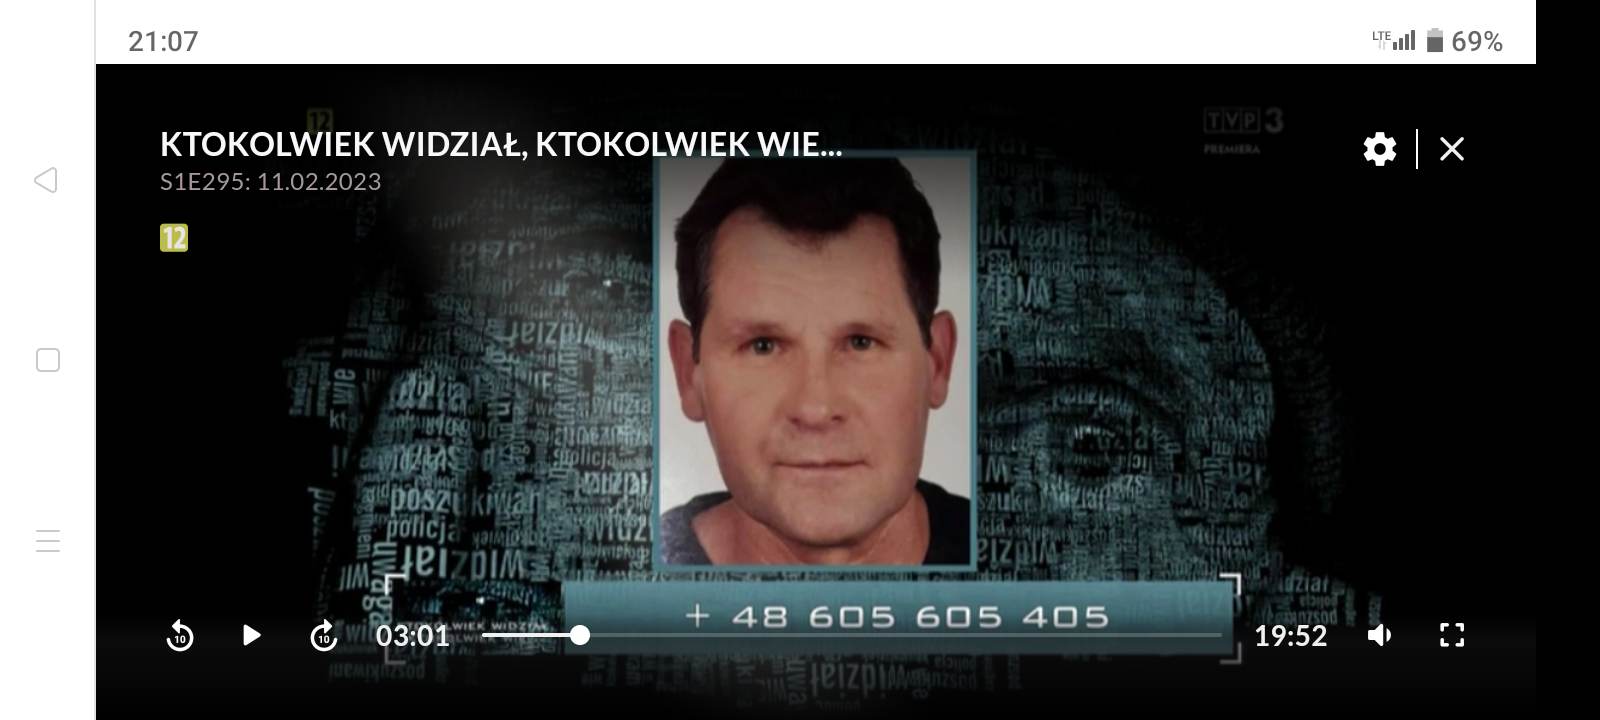 O poszukiwaniach zaginionego 58-letniego częstochowianina w programie "Ktokolwiek widział, ktokolwiek wie" 7